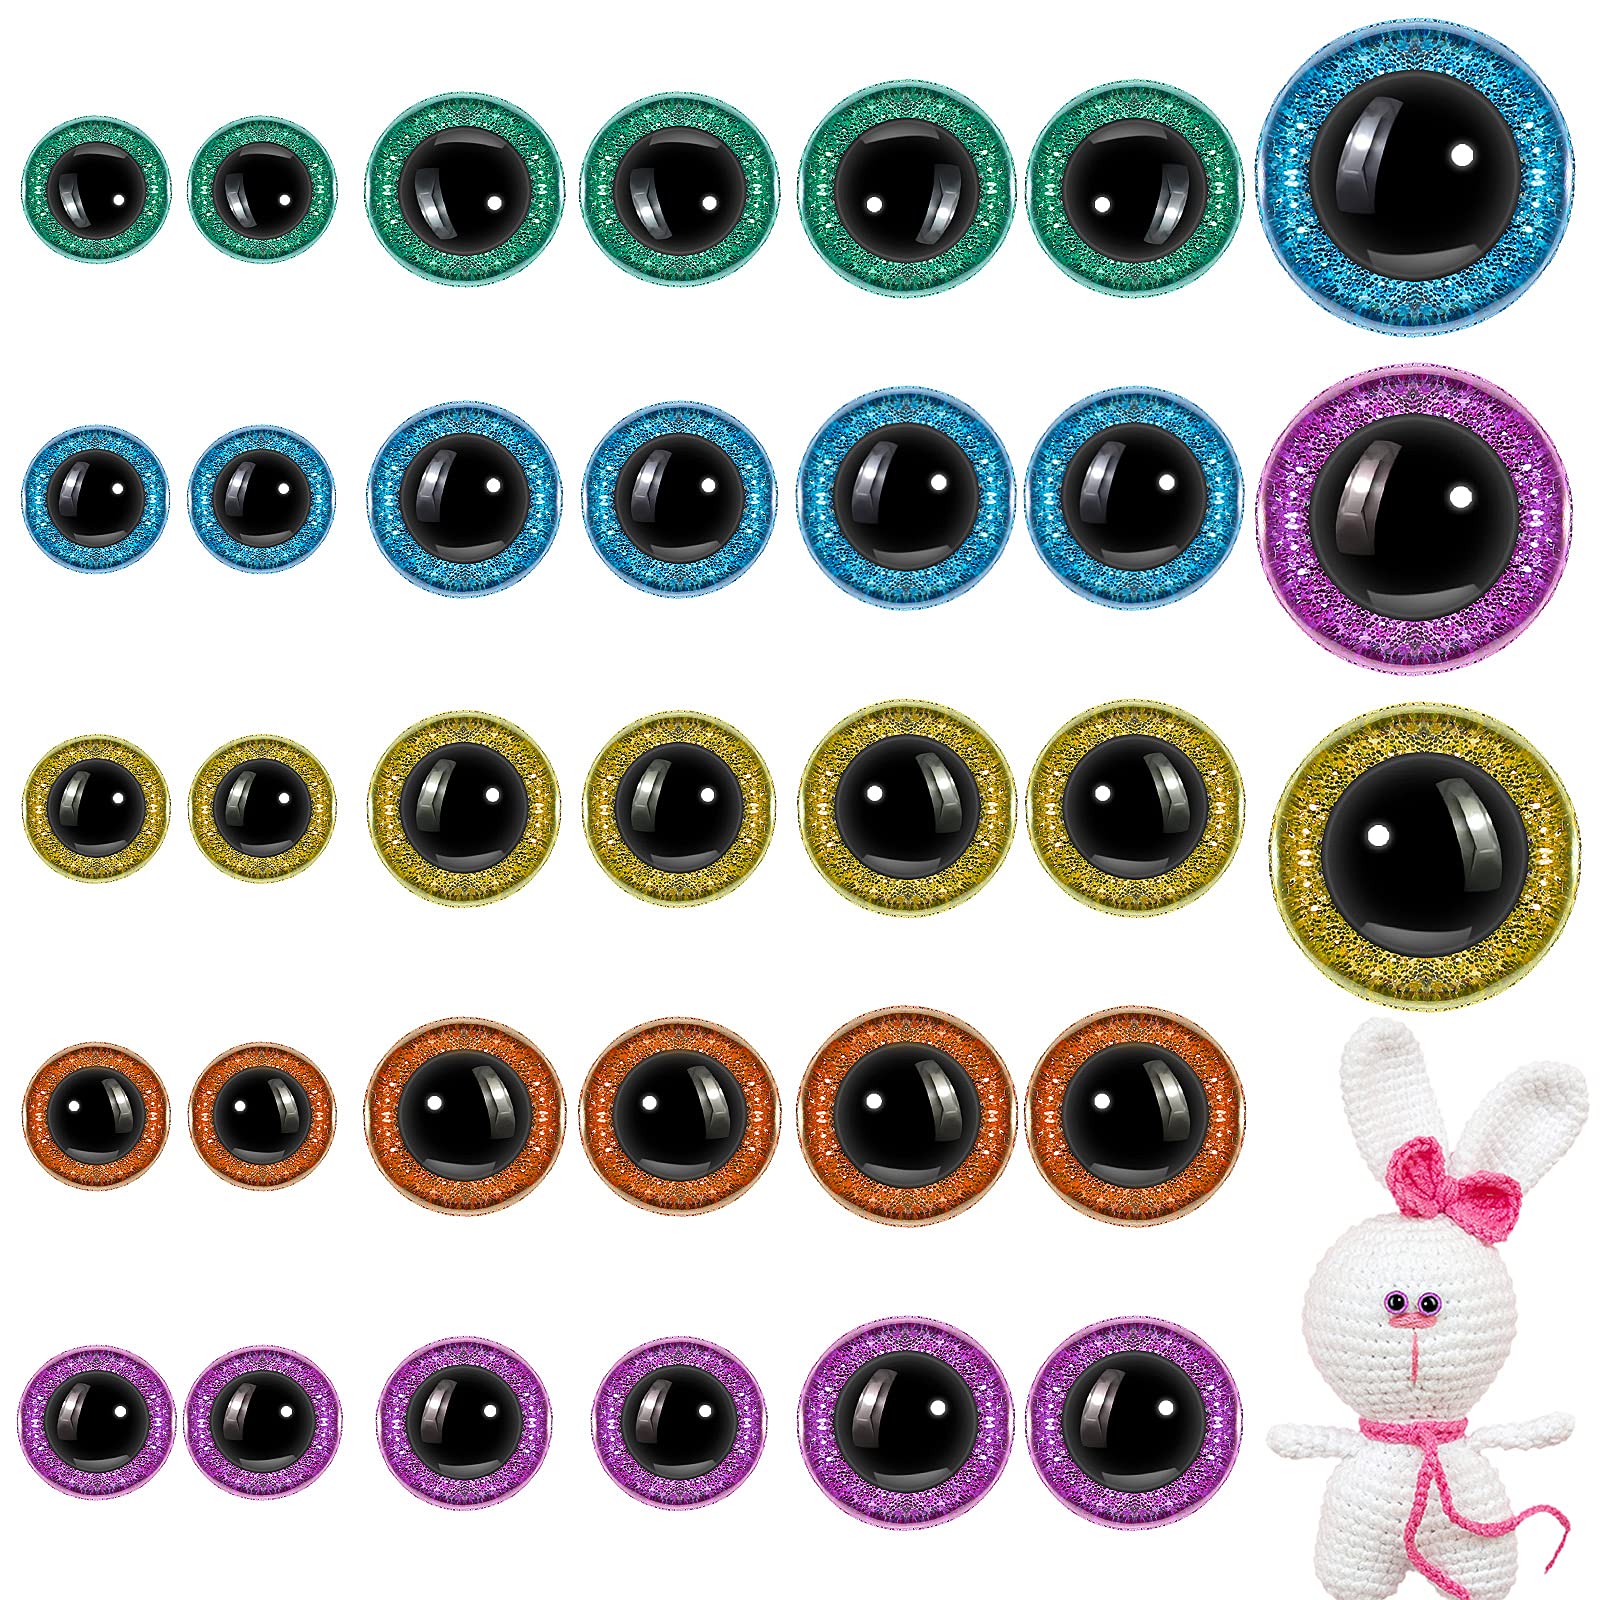 Stuffed Animal Eyes - Plastic Safety Eyes - 12 mm